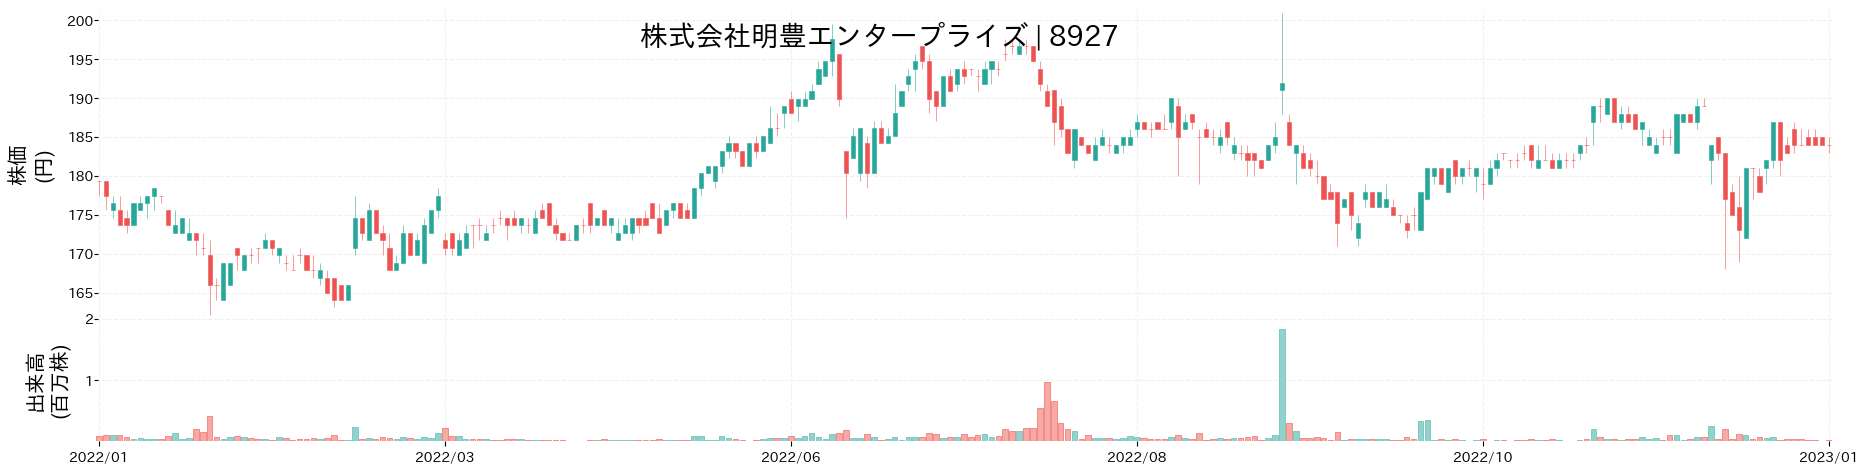 明豊エンタープライズの株価推移(2022)